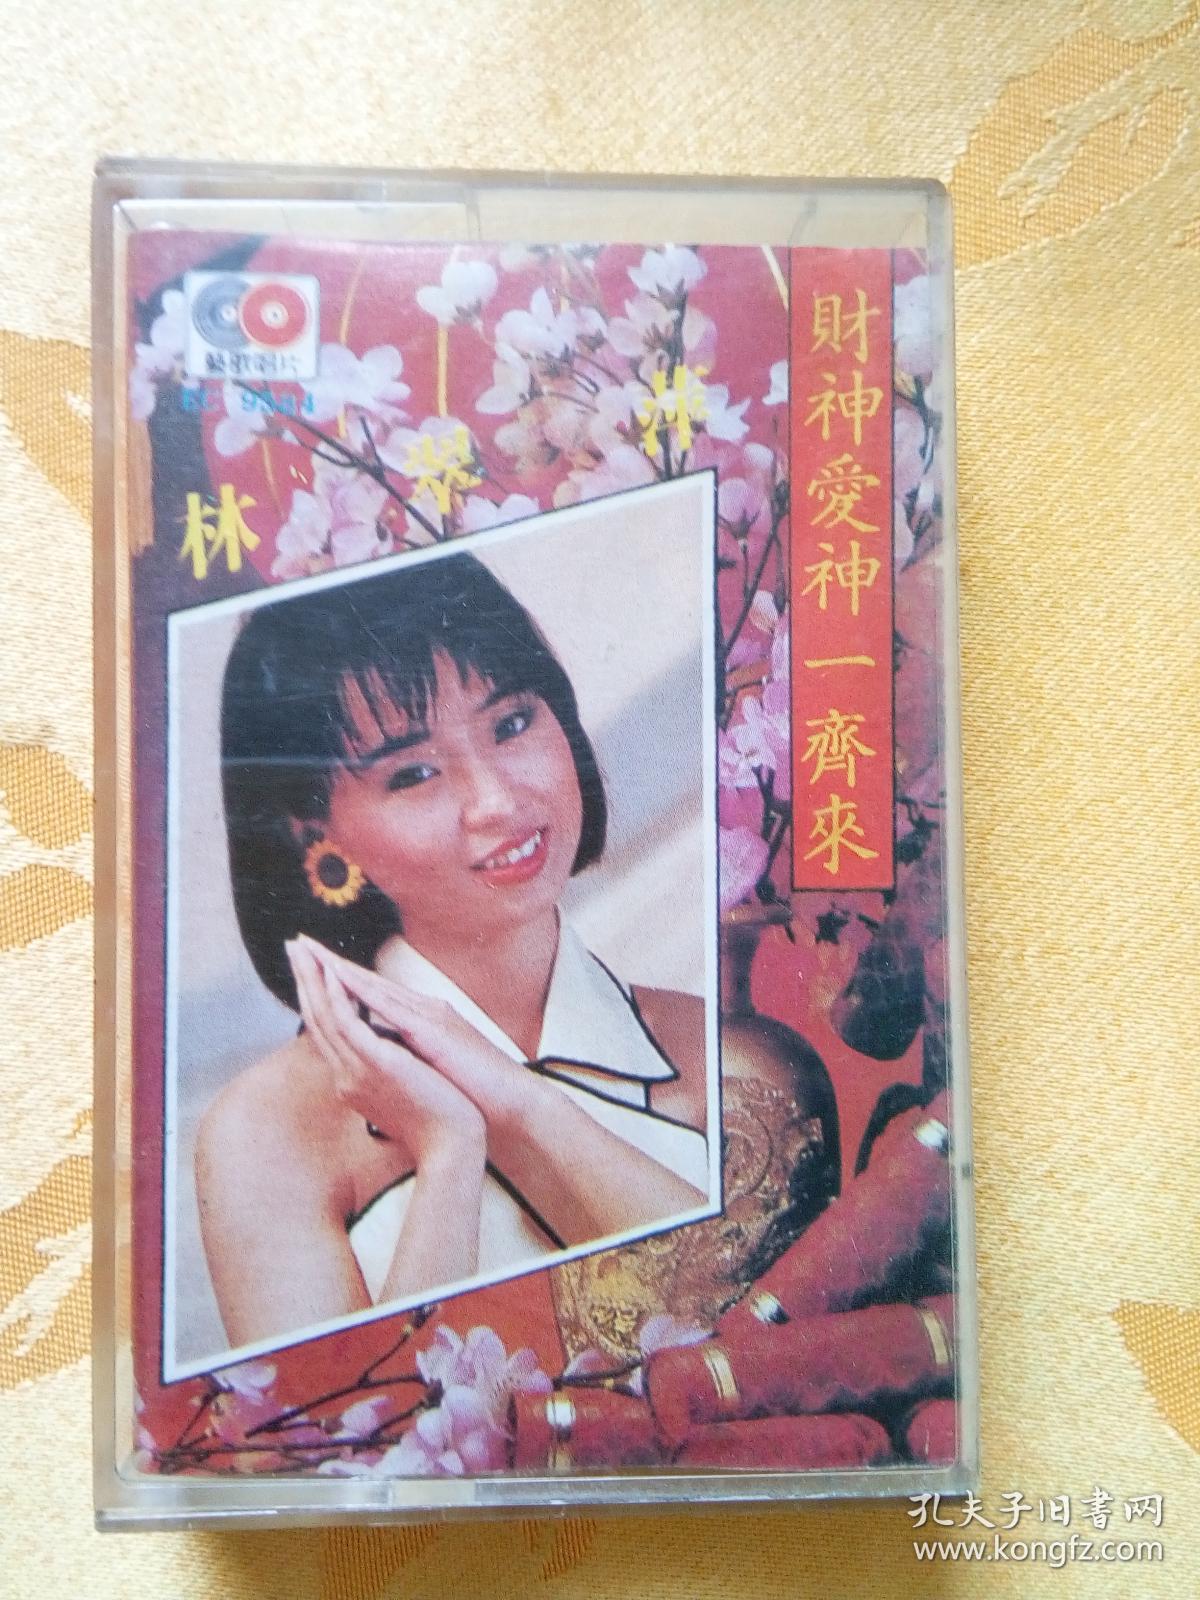 老磁带林翠萍专辑《财神爱神一起来》